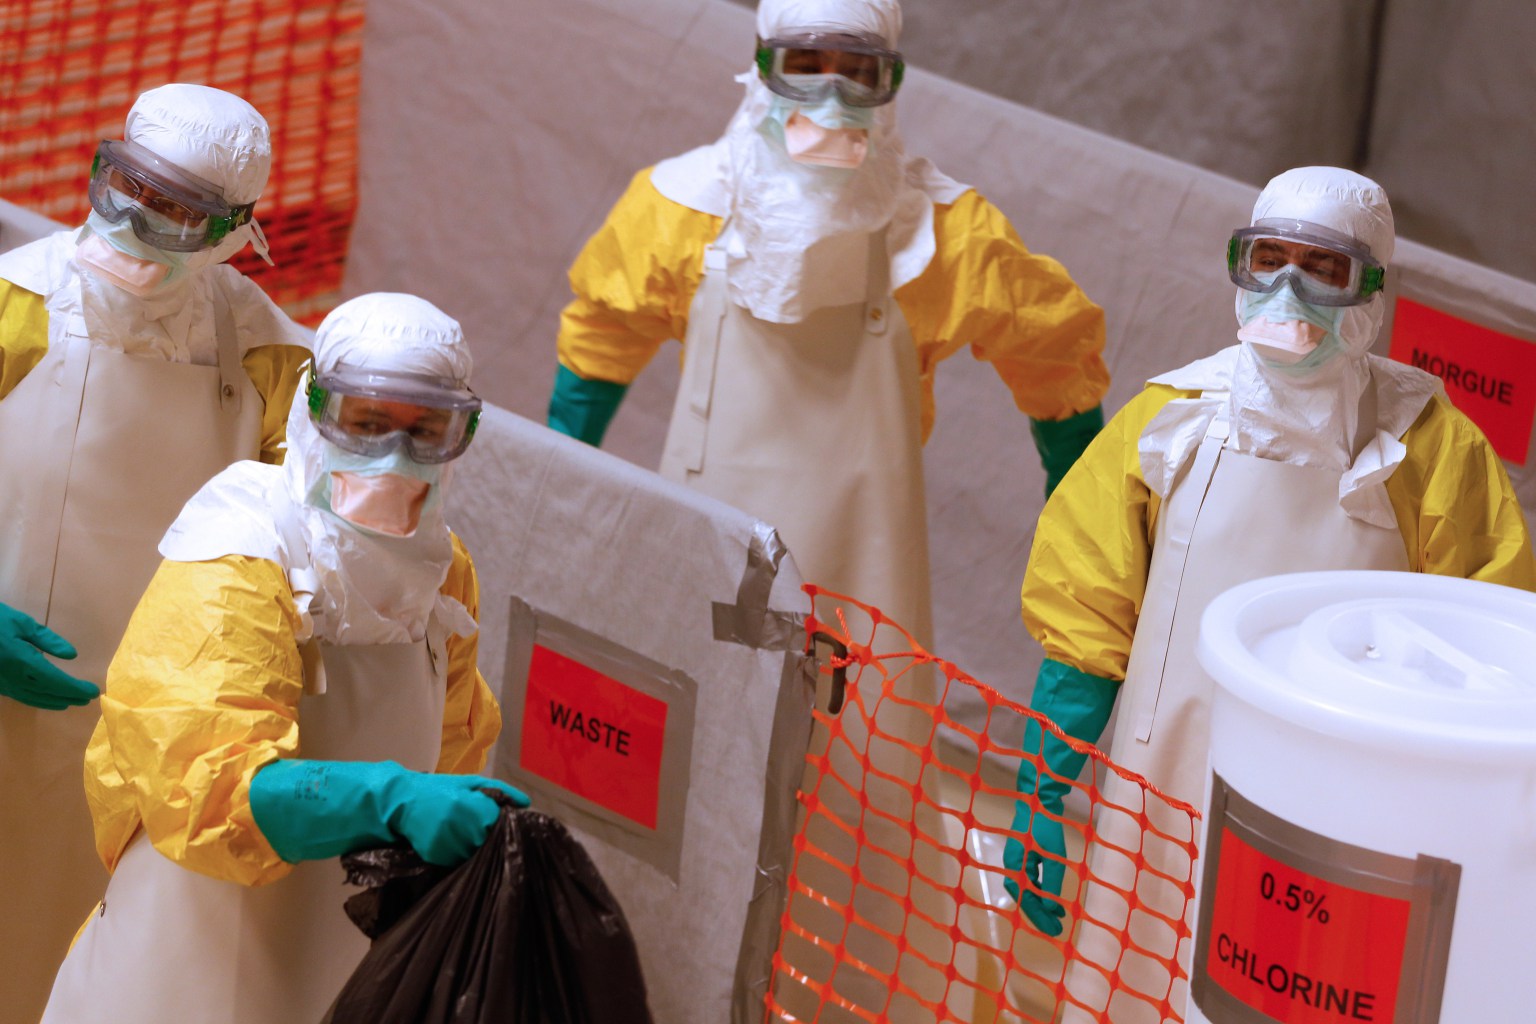 Congo prueba tratamiento experimental con Ebola a medida que crece un brote mortal